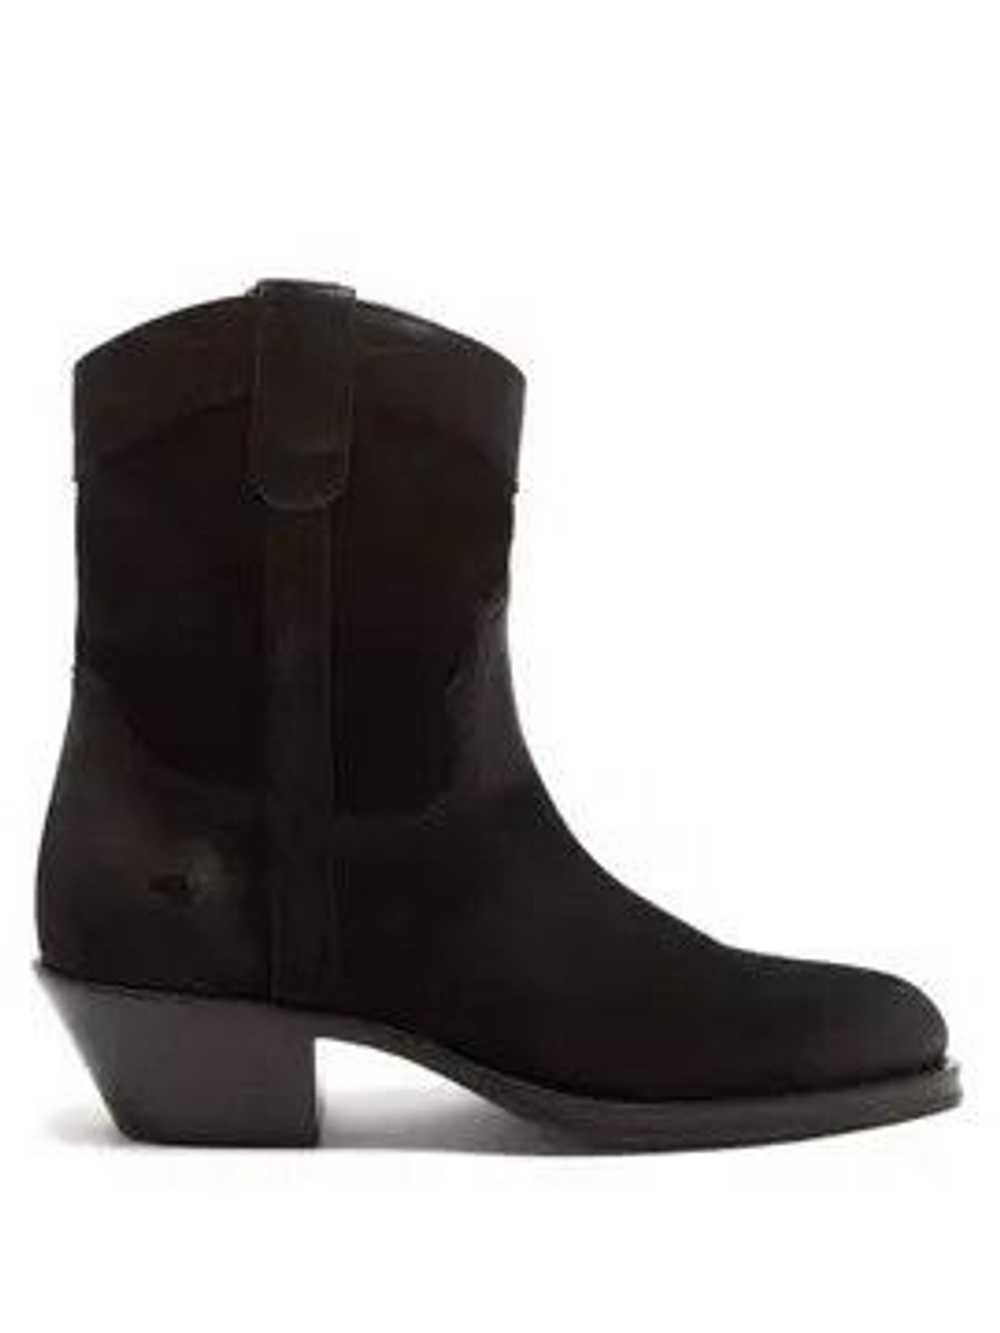 Saint Laurent Paris o1w1db10623 Boots in Black - image 1